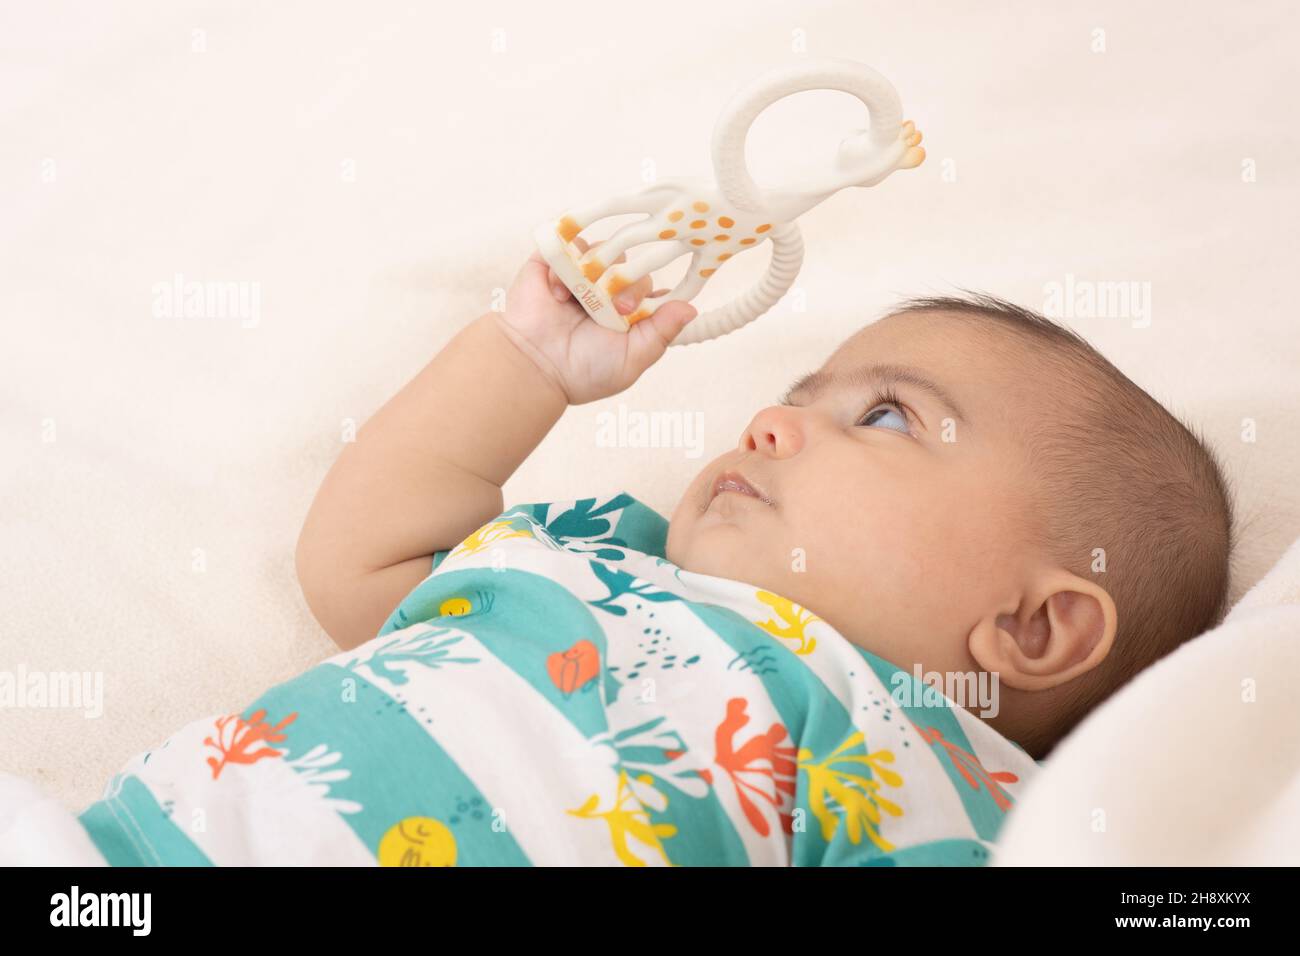 bébé garçon de 3 mois gros plan sur le dos regardant le jouet qu'il tient dans sa main Banque D'Images